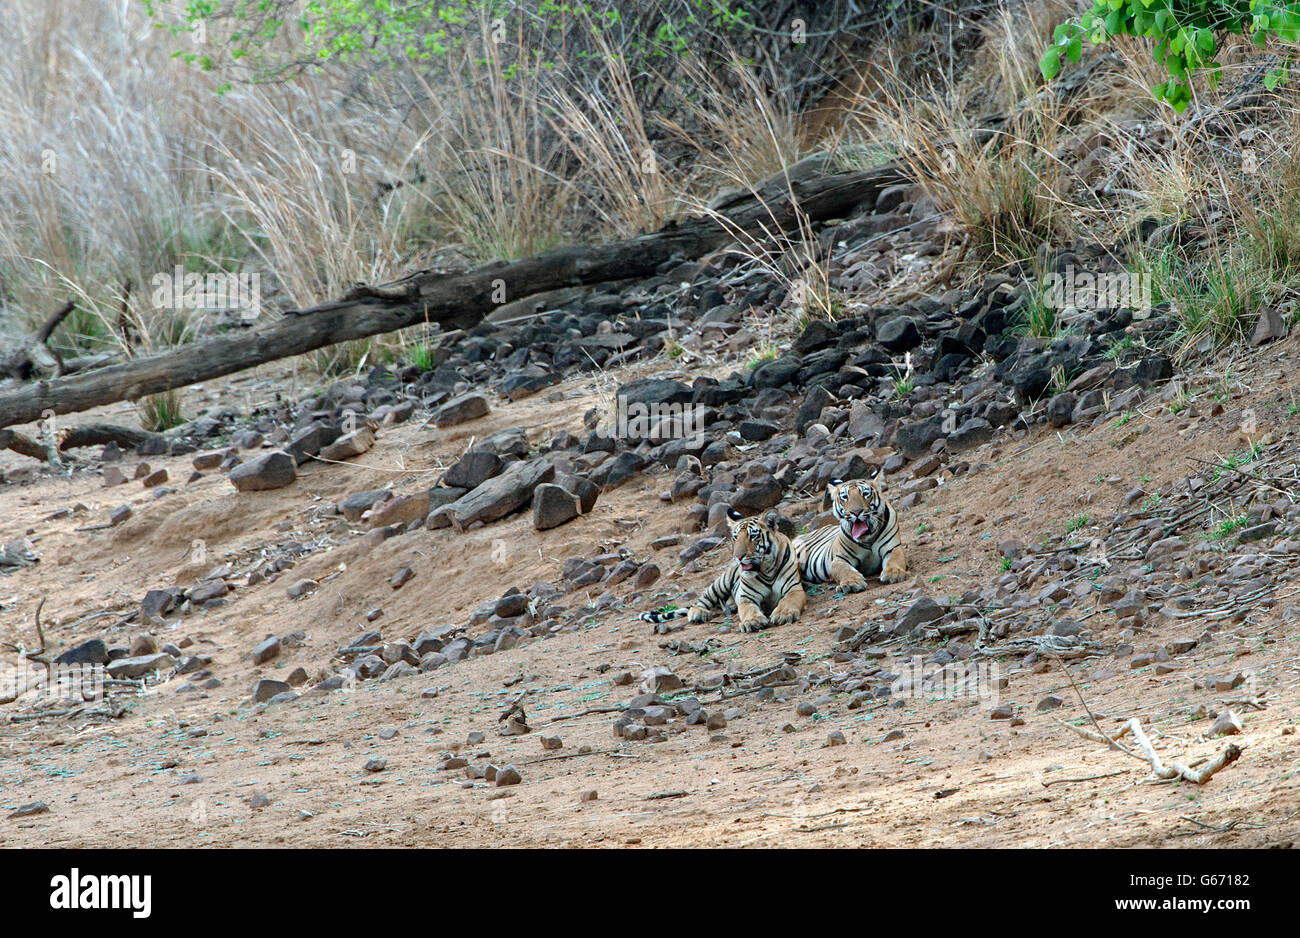 The image of Tiger ( Pnathera tigris ) Mayas cubs in Tadoba national park, India Stock Photo